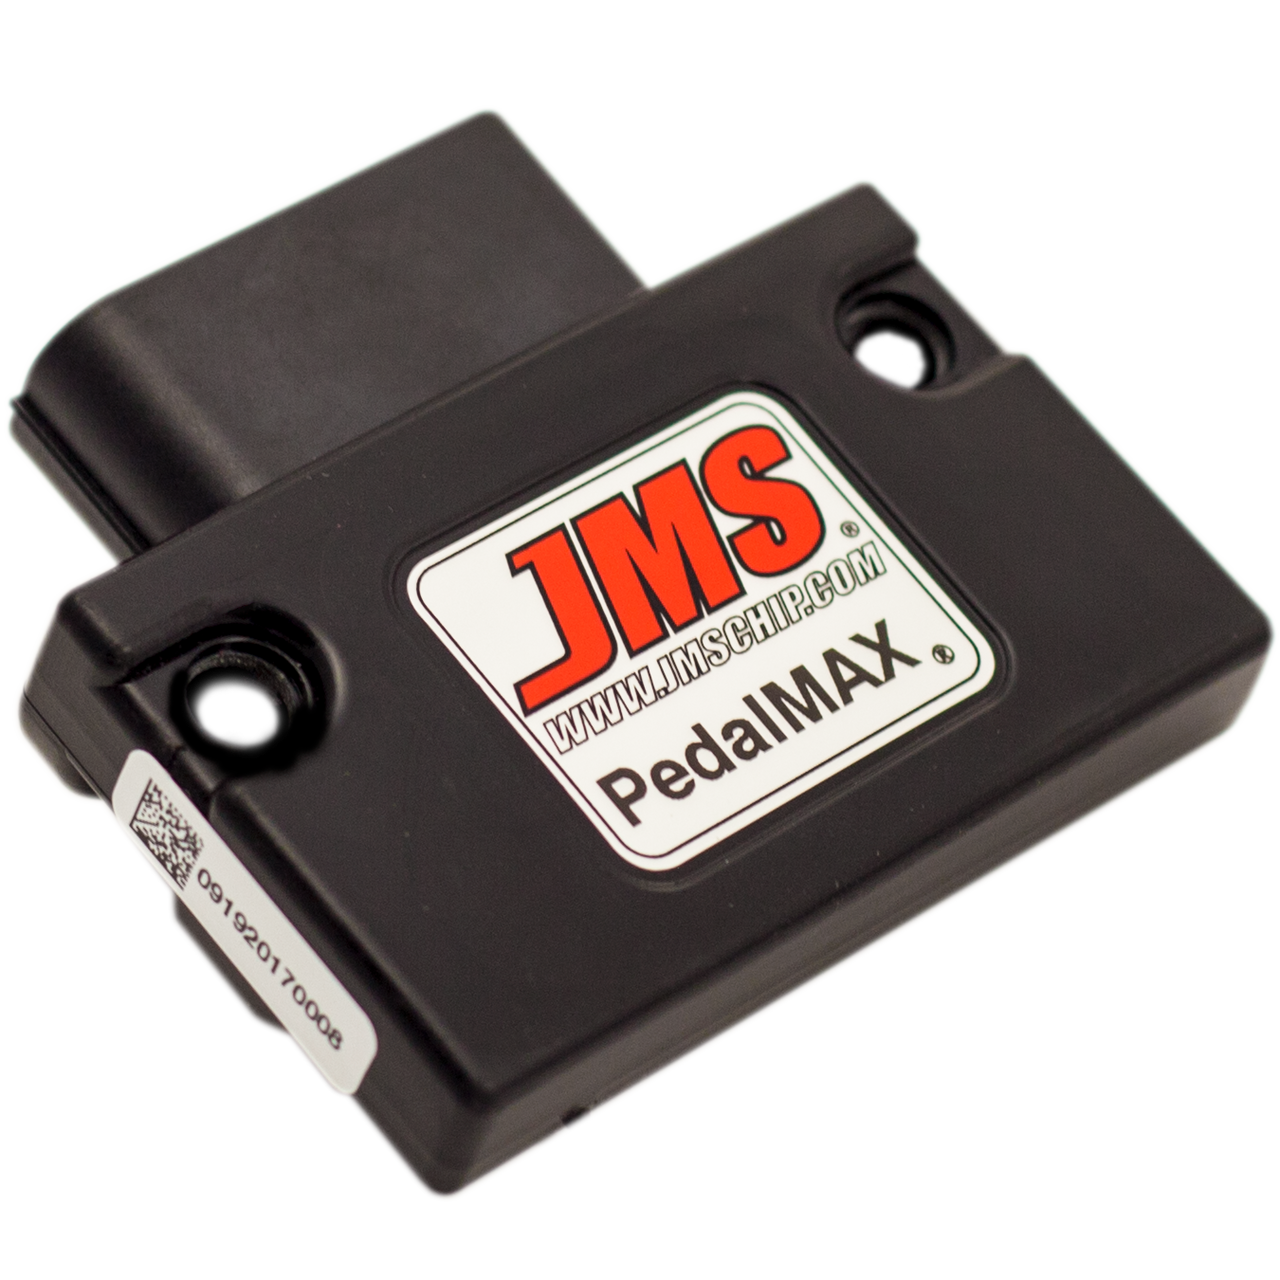 JMS Pedalmax Drive Wire Throttle Enhancement Device Plug & Play PX1114DCX